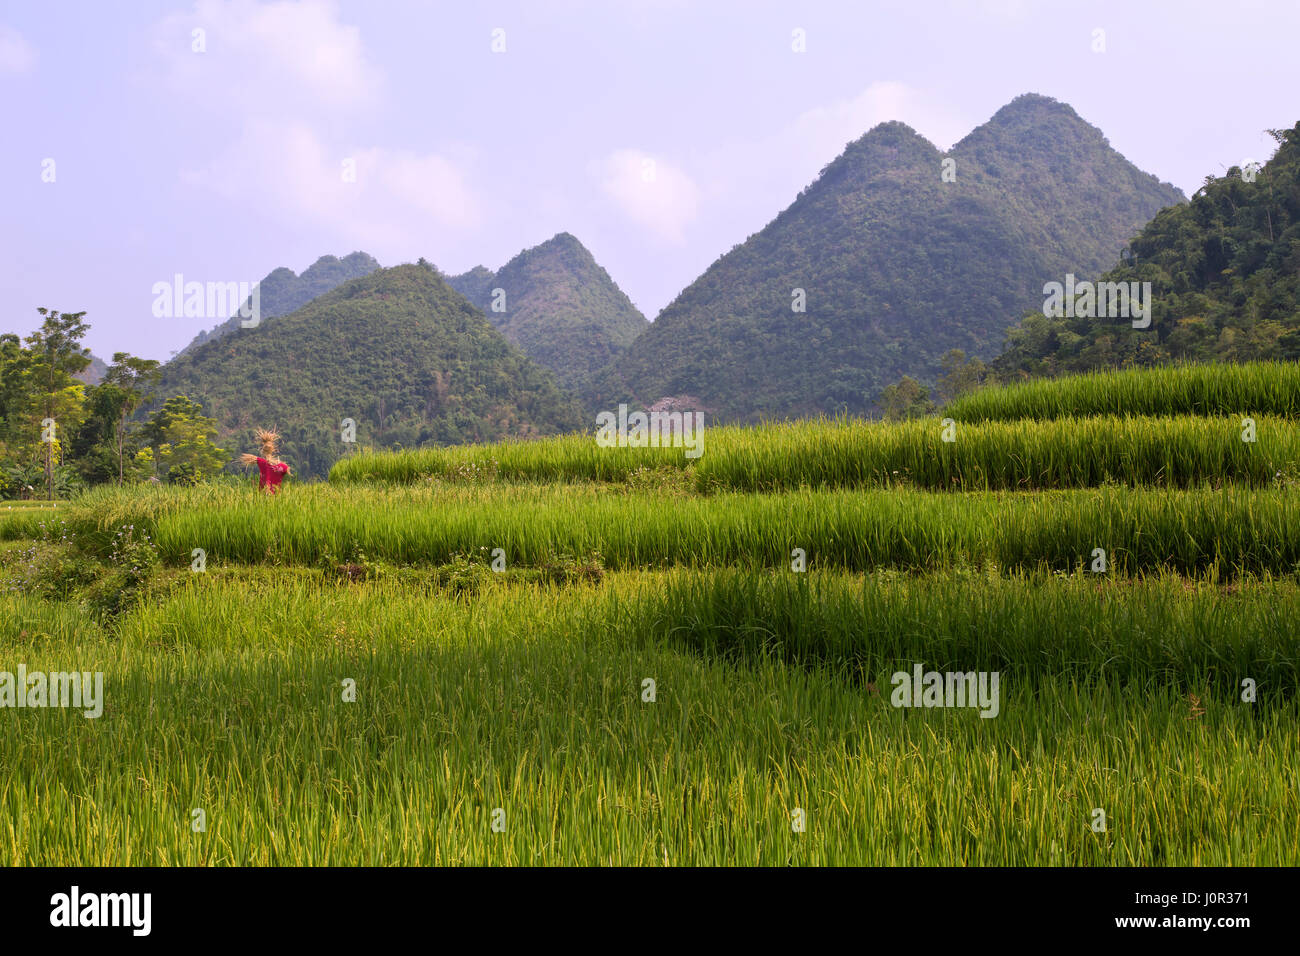 Les rizières en terrasses de maturation, donnant sur l'épouvantail, Muong Thanh, province de Dien Bien, le Vietnam, l'Indochine. Banque D'Images